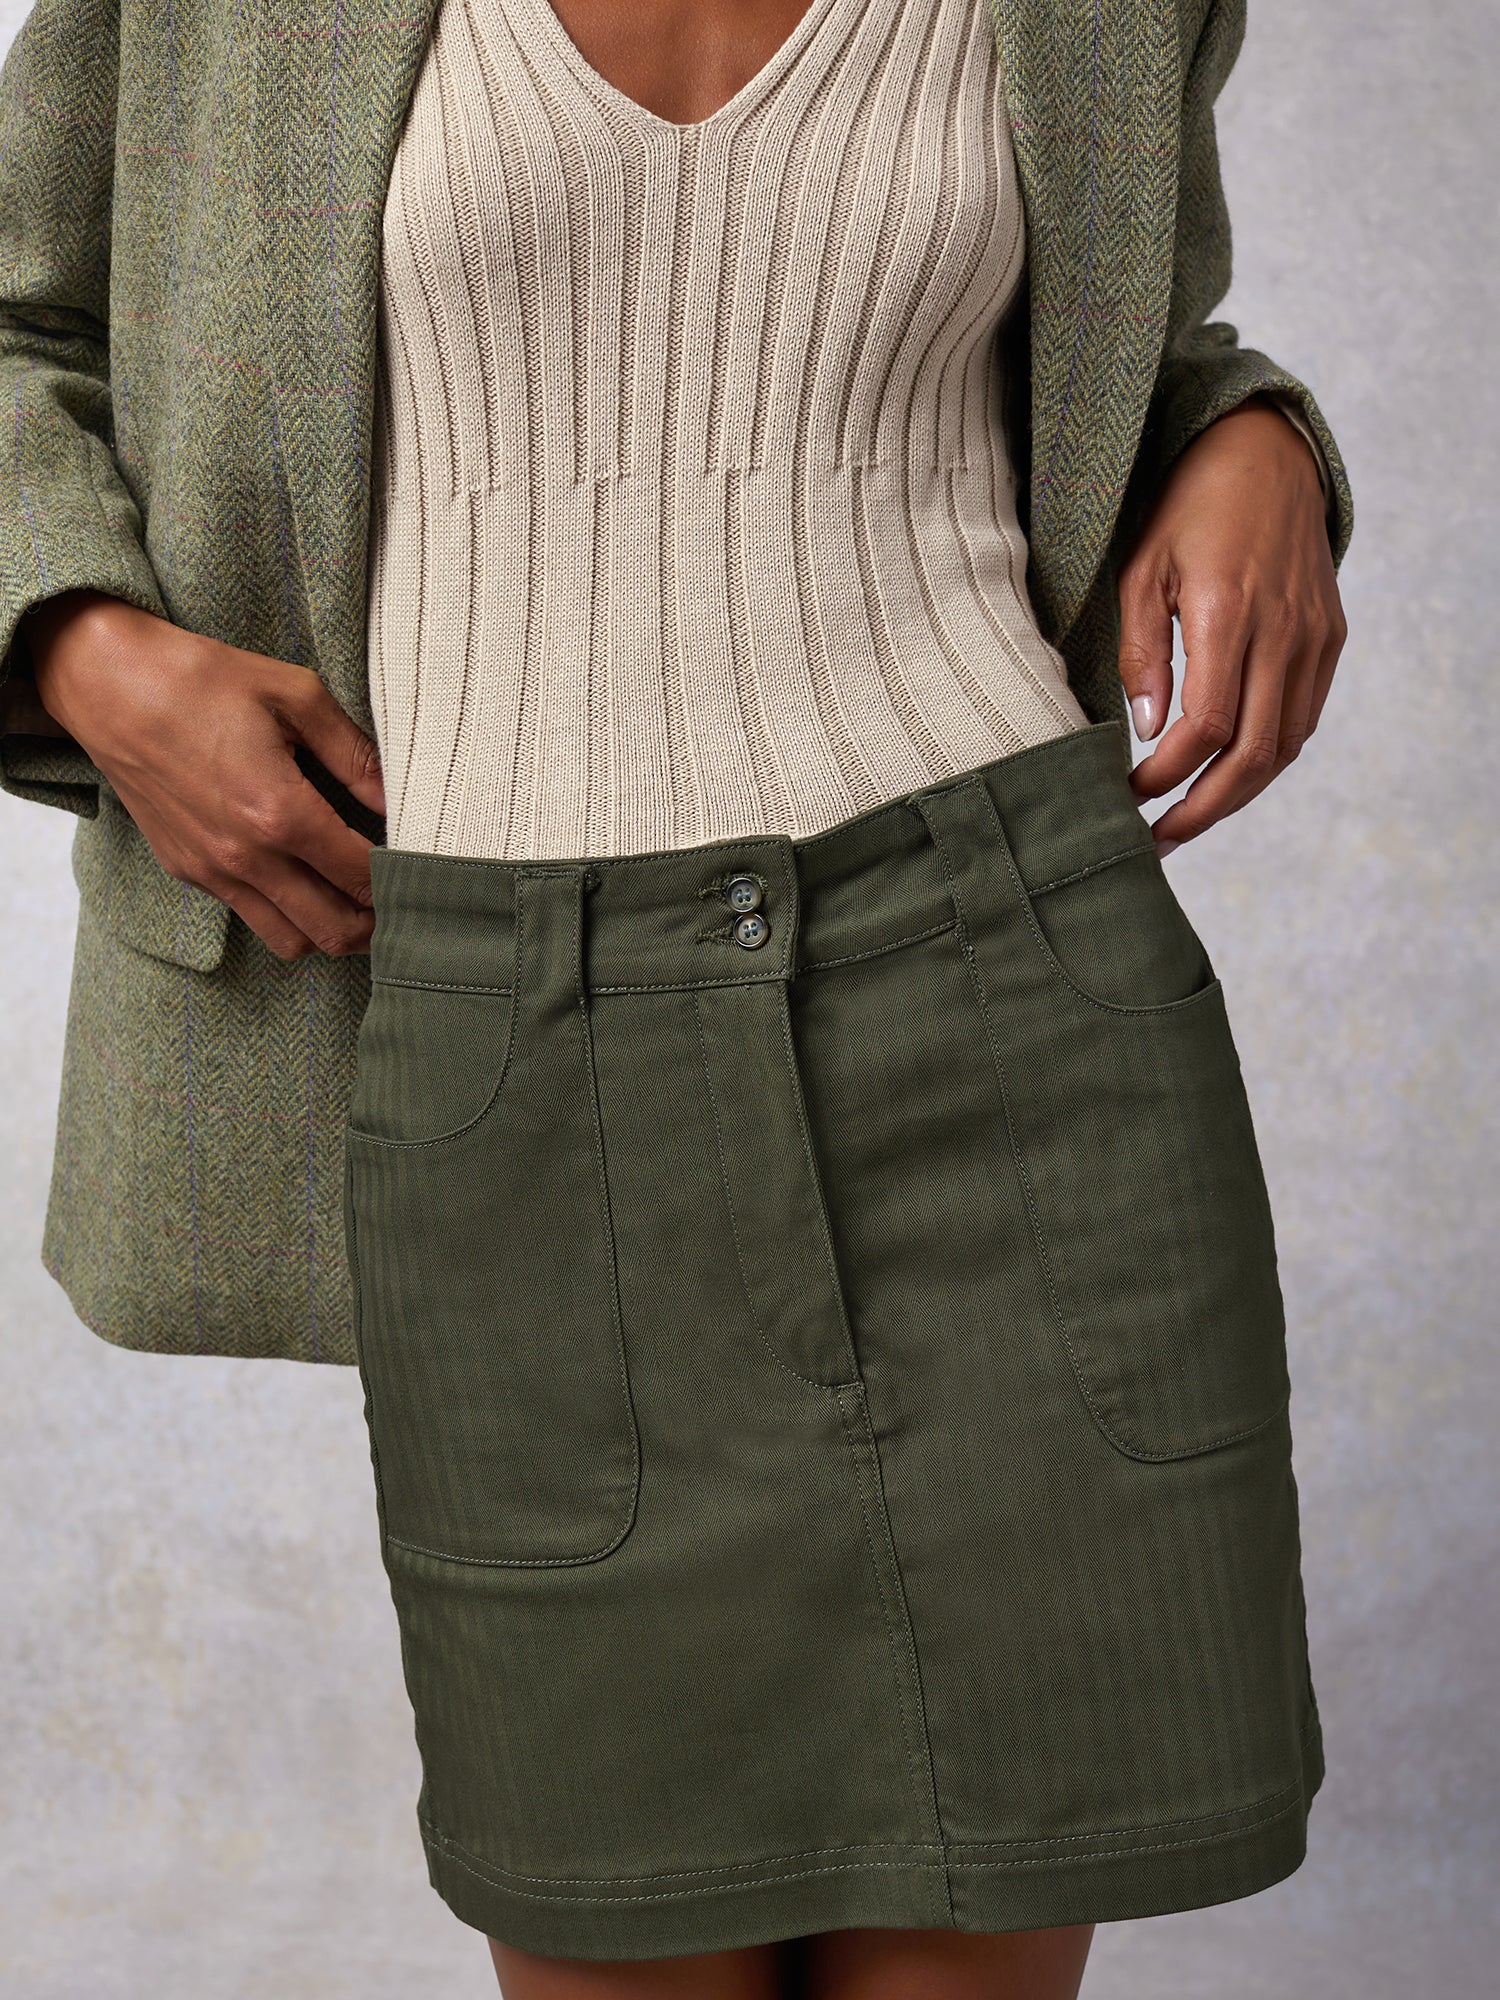 Cute Olive Green Denim Skirt - Snap Button Skirt - A-Line Skirt - Lulus